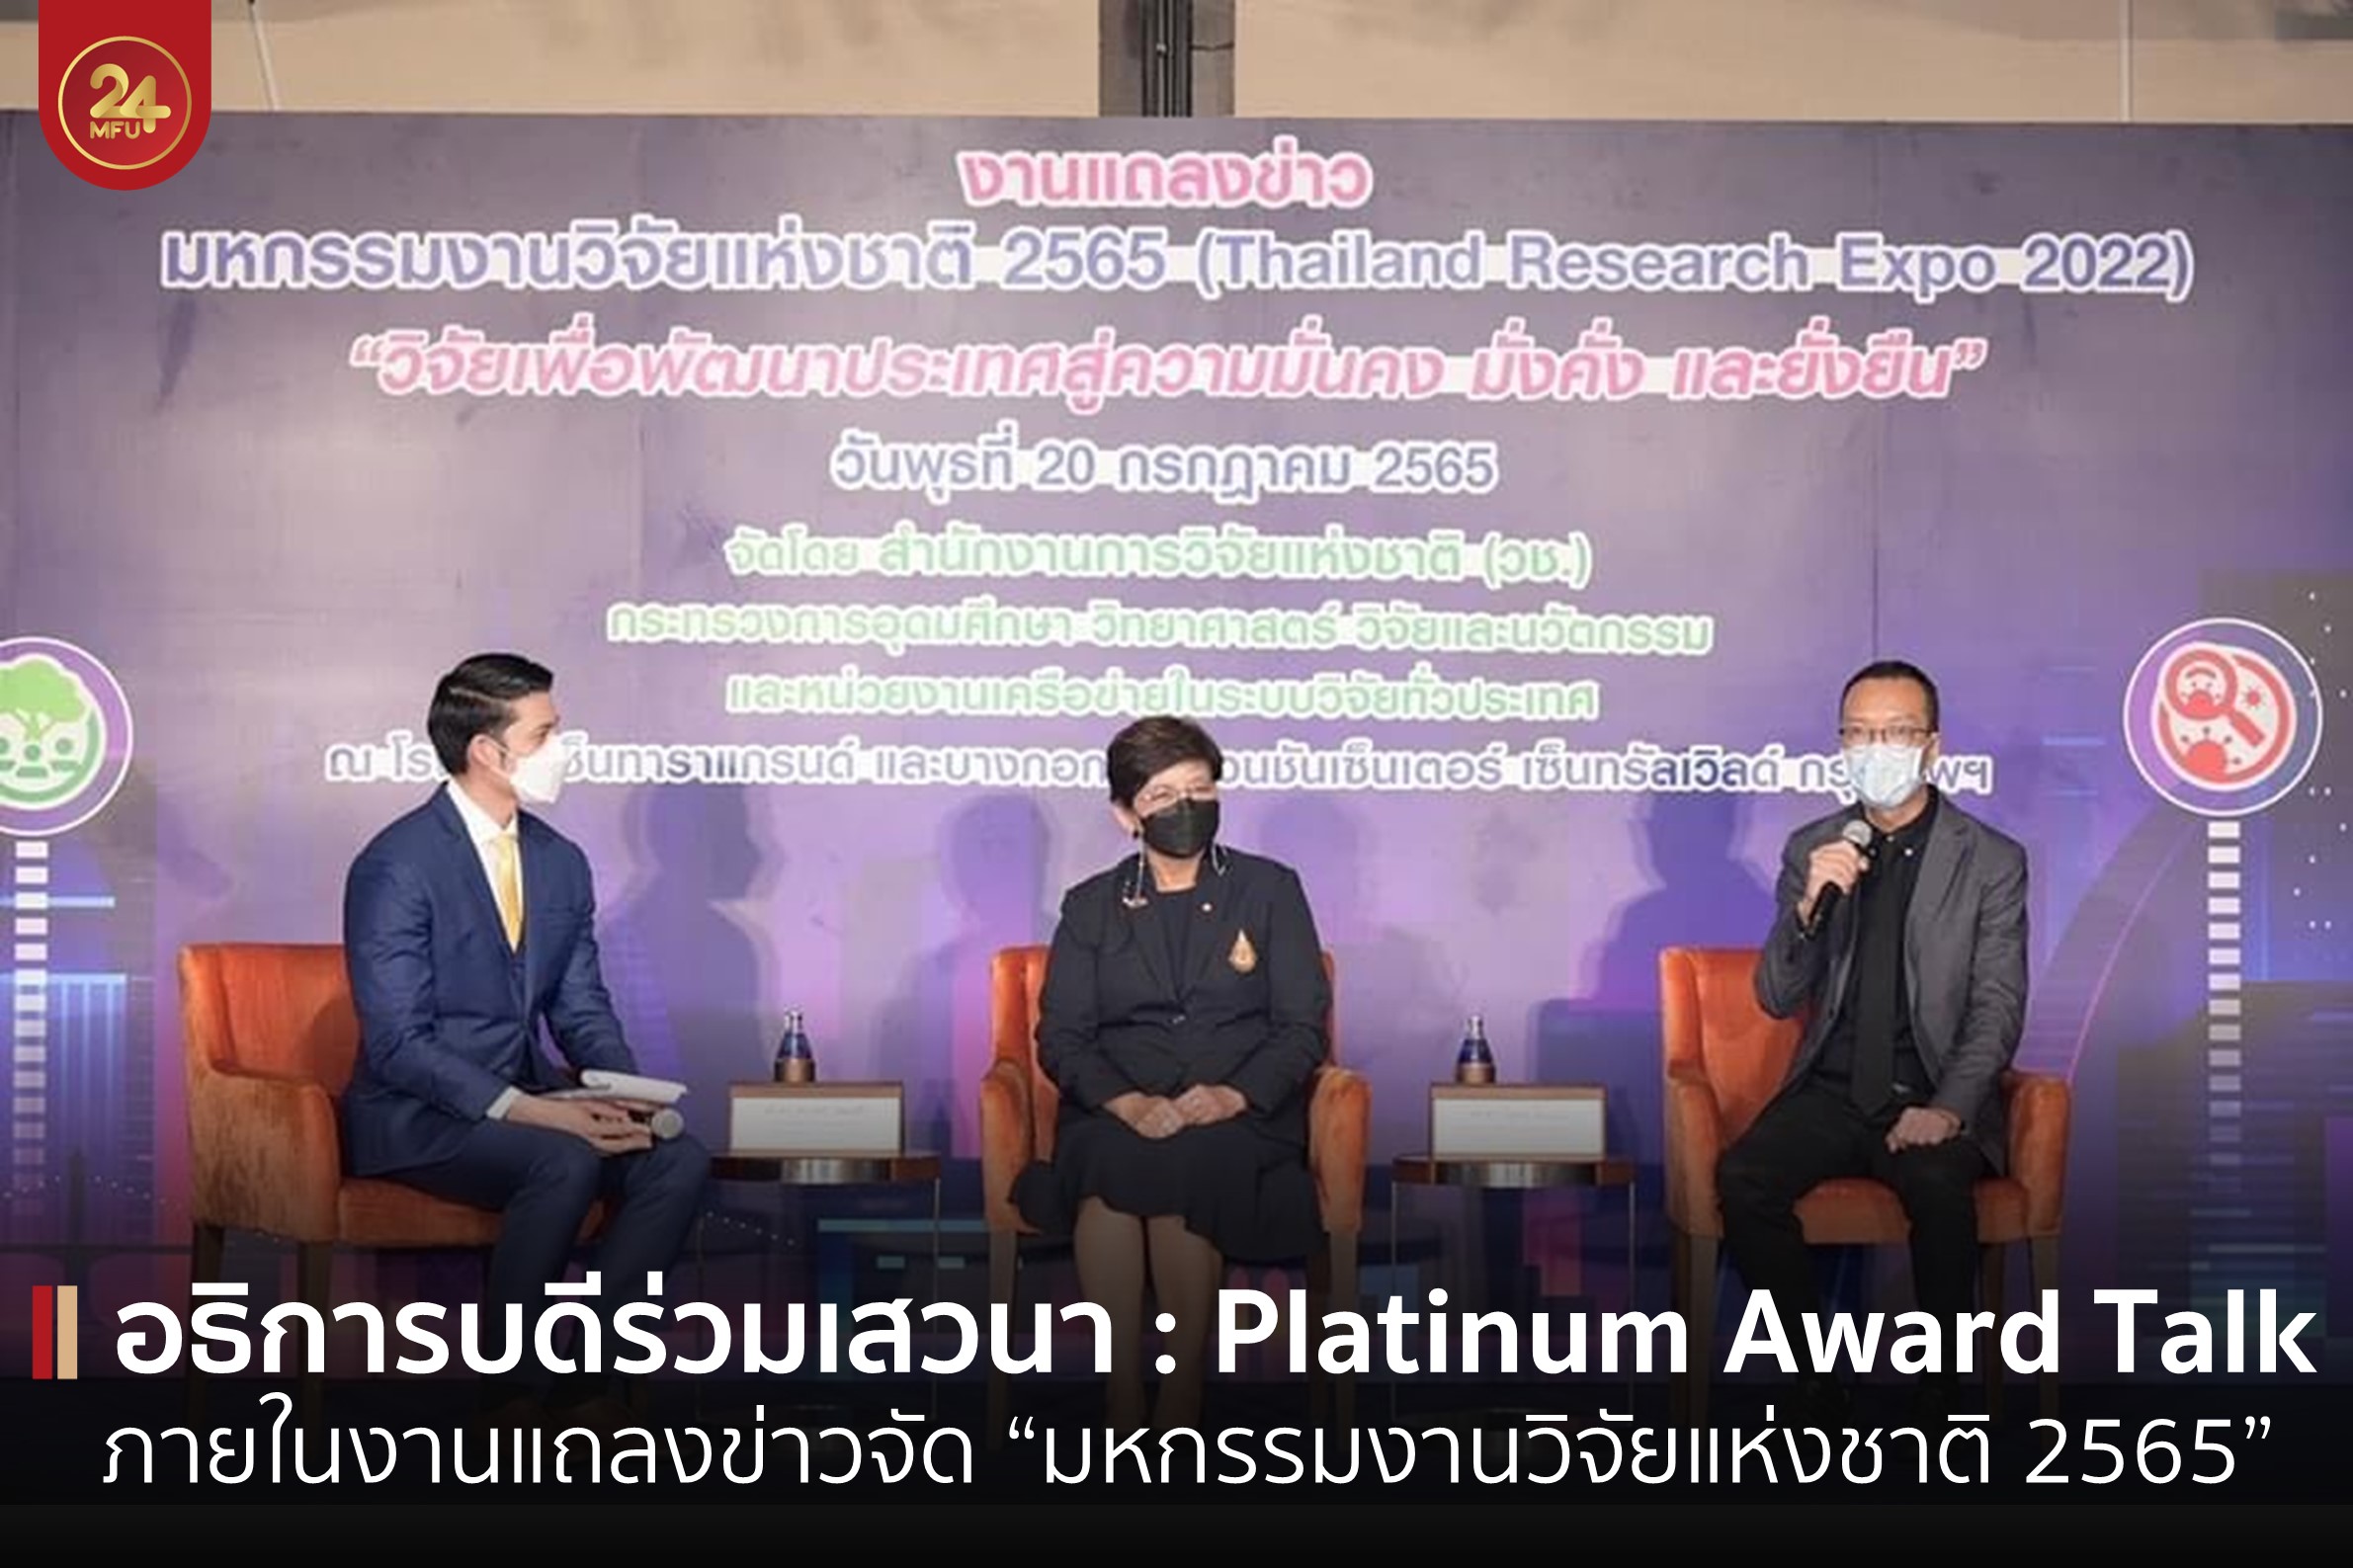 อธิการบดี มฟล. ร่วมเสวนา Platinum Award Talk ภายในงานแถลงข่าวการจัดงาน “มหกรรมงานวิจัยแห่งชาติ 2565 (Thailand Research Expo 2022 )” 